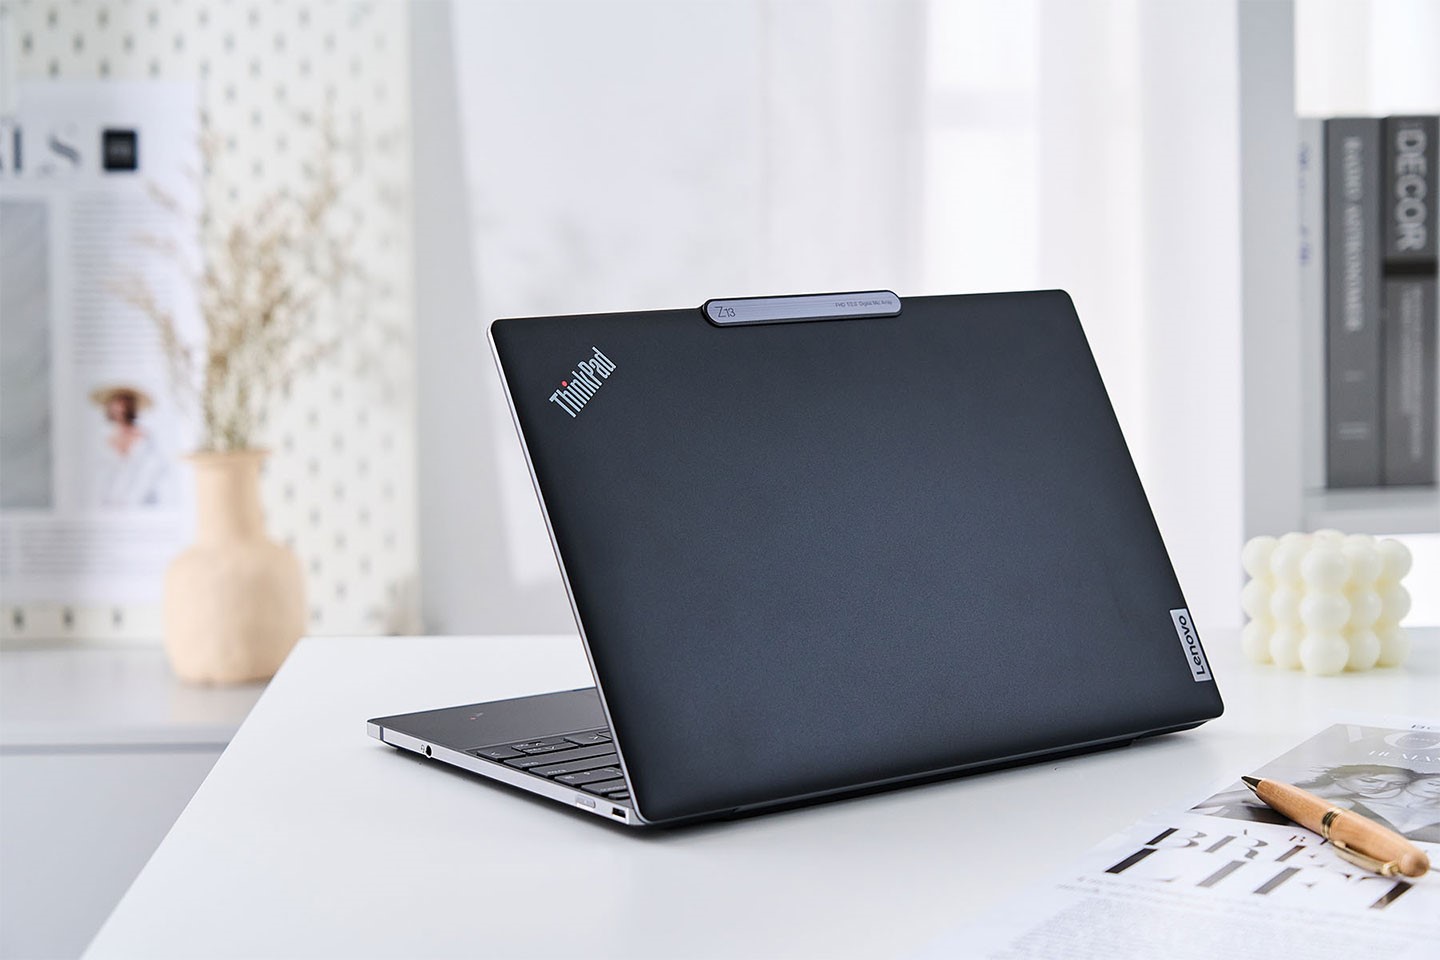 此次受測的 ThinkPad Z13 是北極灰款式，上蓋為霧面金屬材質，Lenovo 原廠也有另外販售上蓋為黑色可回收 PET 純素皮革材質的青銅色款式。